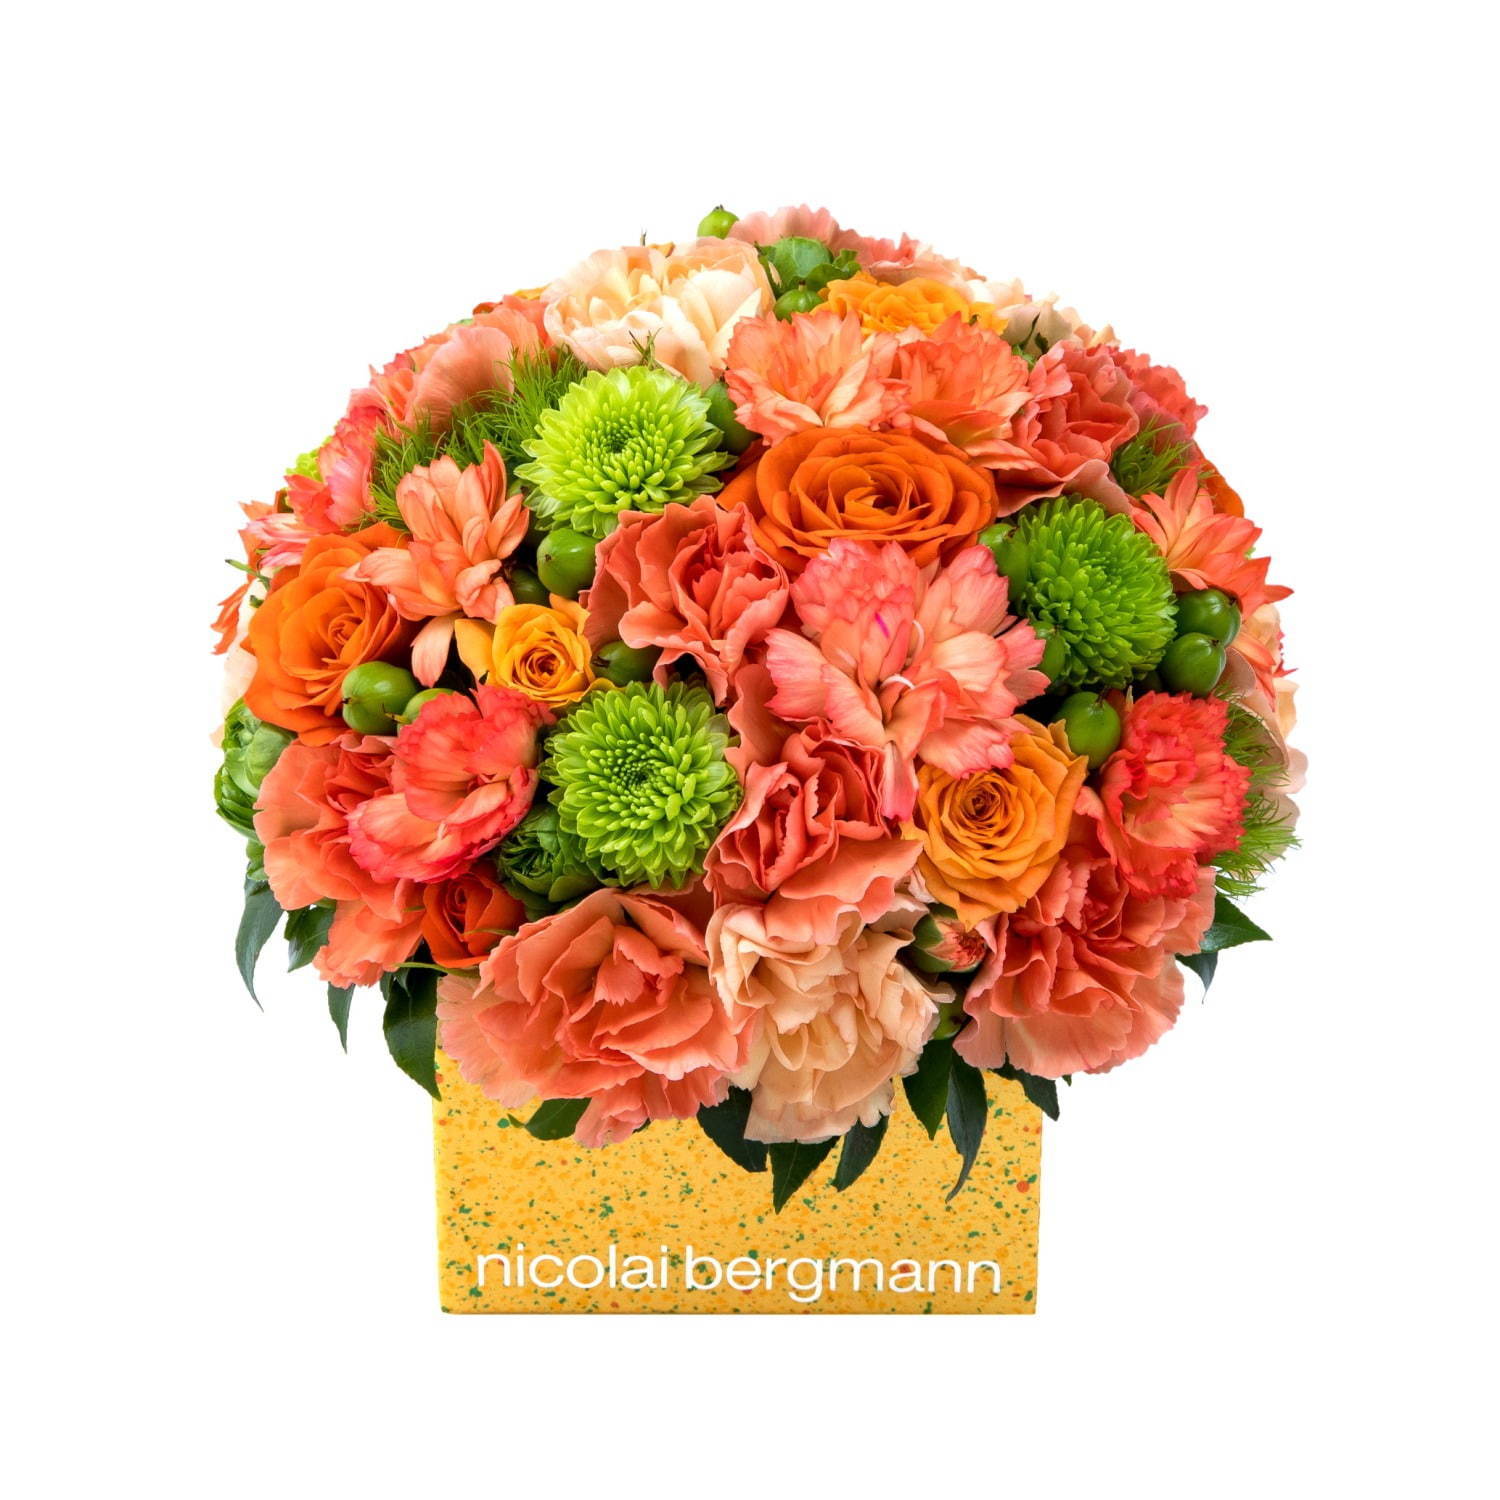 ニコライ バーグマン夏限定フラワーボックス、オレンジ×グリーンの花々をドット柄ボックスに詰めて｜写真3